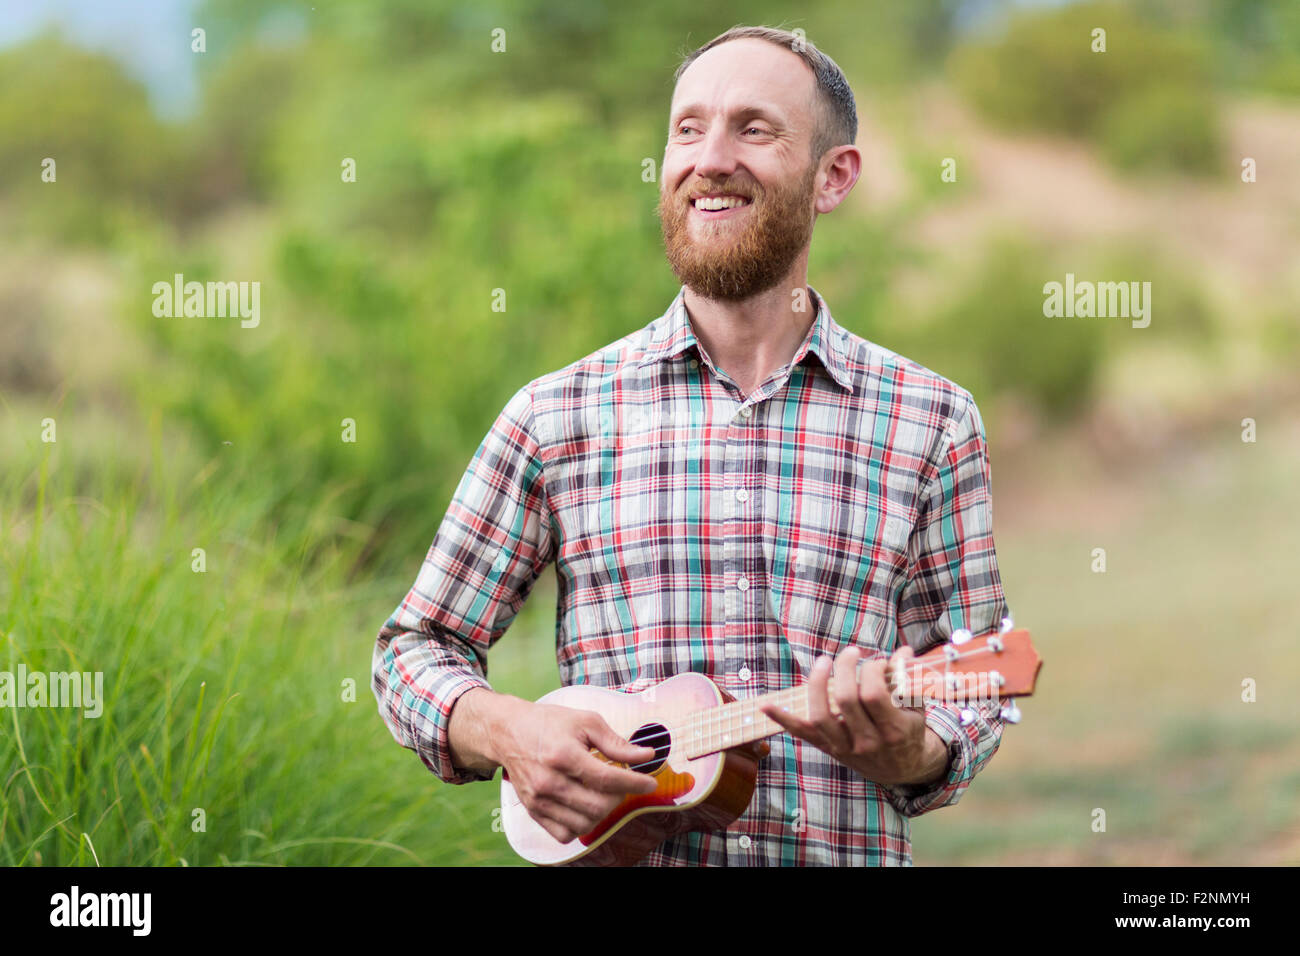 Caucasian man playing ukulele outdoors Stock Photo